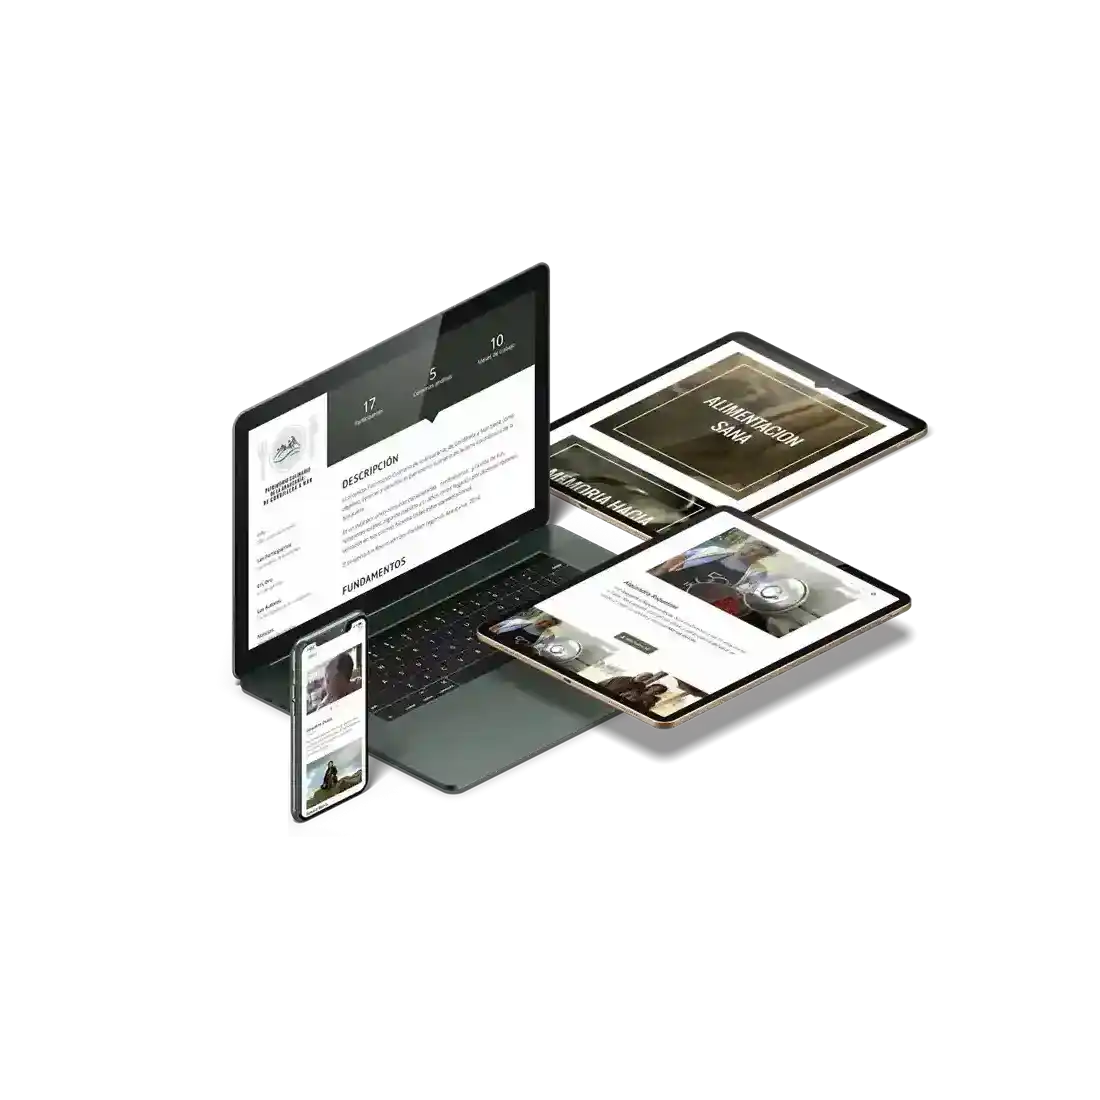 Varias vistas del sitio web en notebook, dispositivos móviles y tabletas.